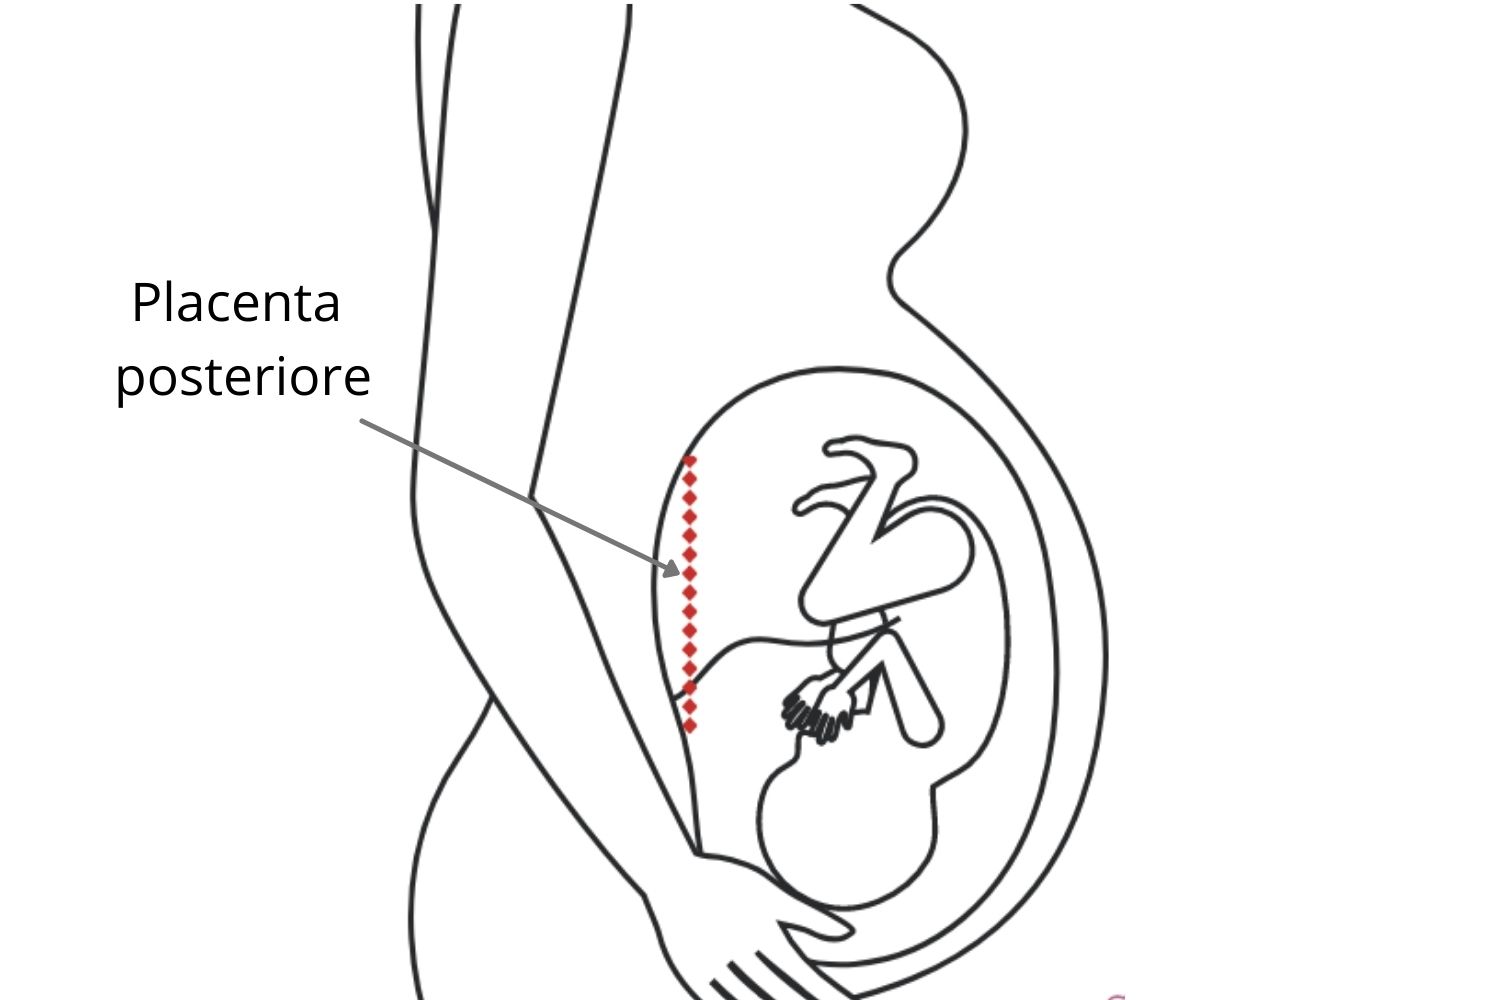 Placenta posteriore